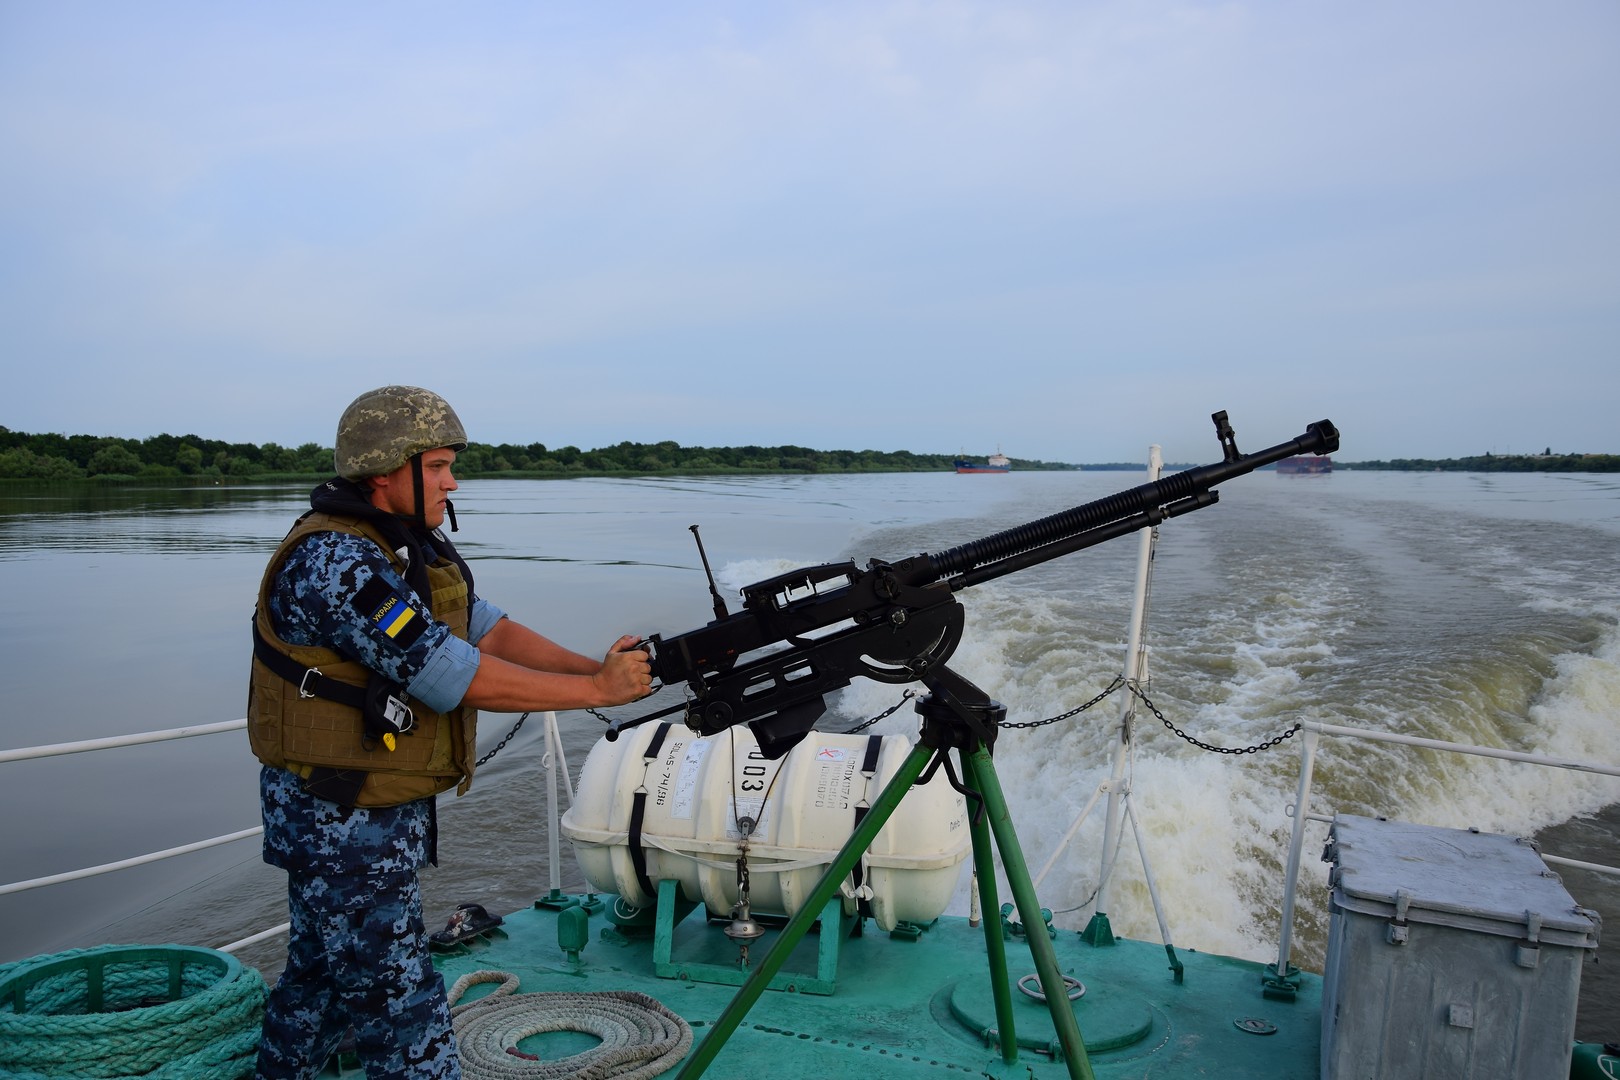 Пограничники поделились кадрами учений, которые они провели совместно с ВМС ВСУ в Черном море. Фото: ГПСУ